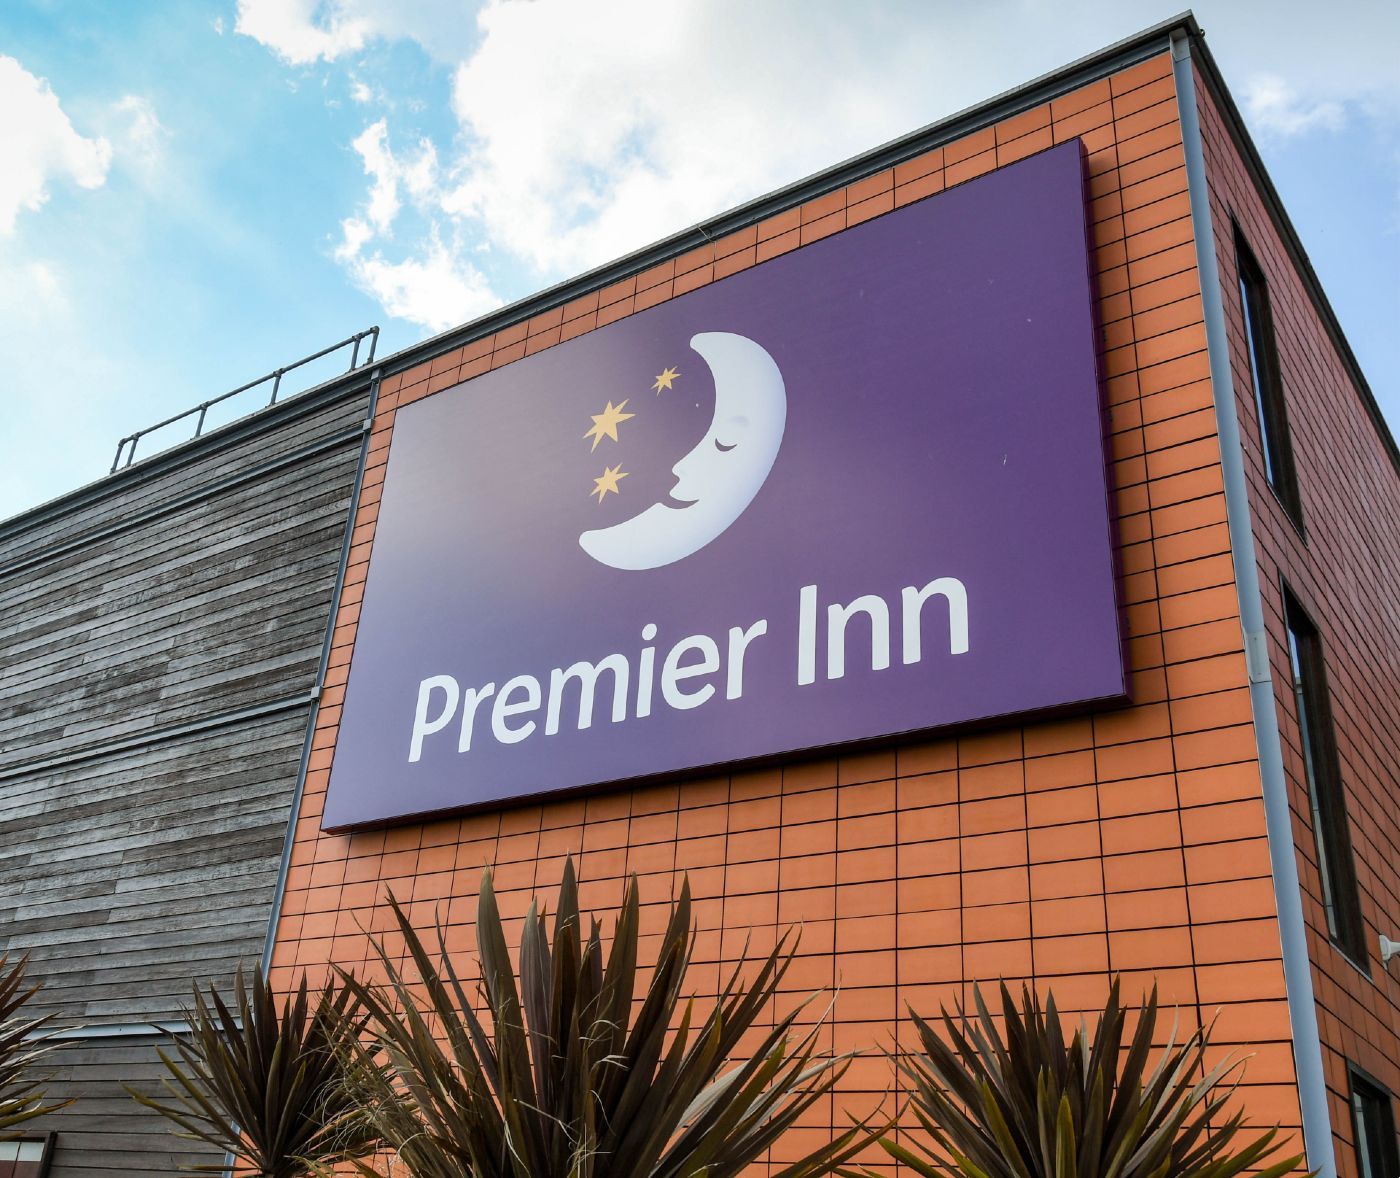 Premier Inn - Premier Inn refunds